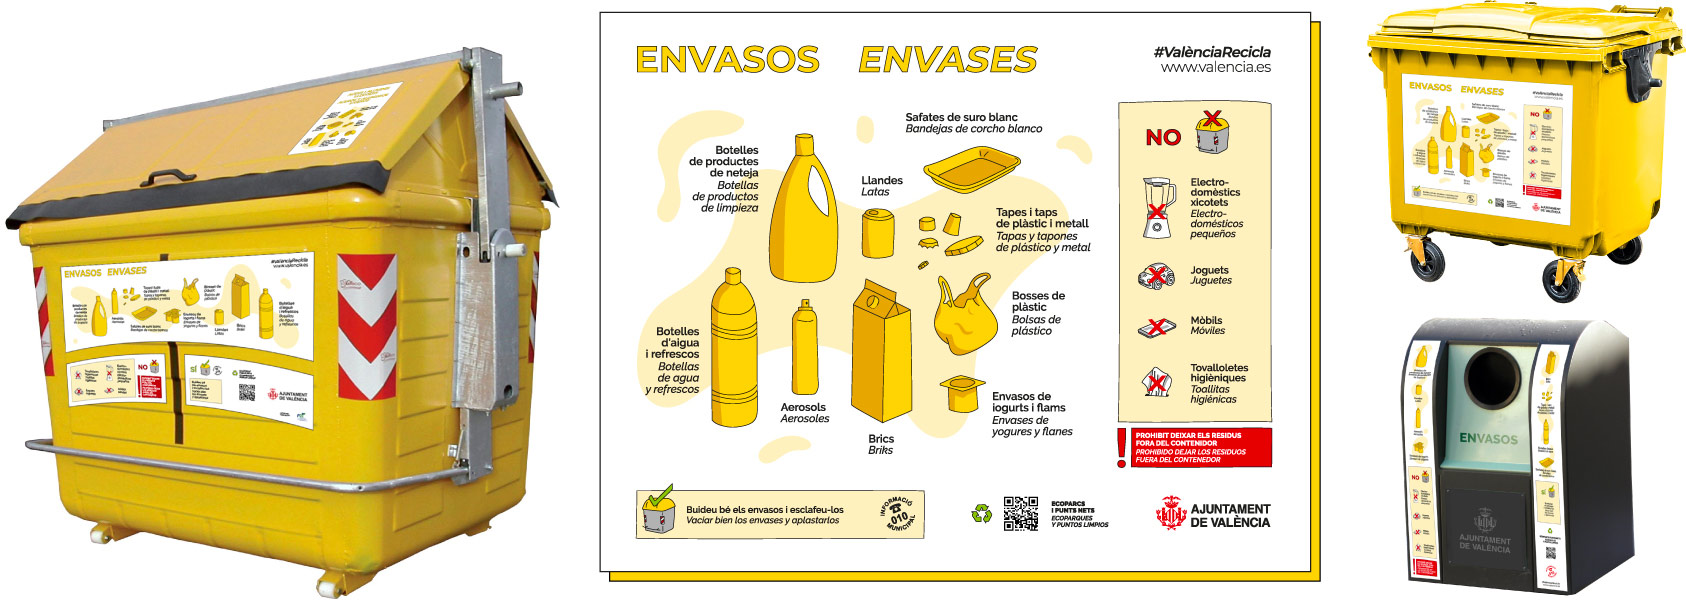 beatriz-diaz-valencia-recicla-contenedor-amarillo